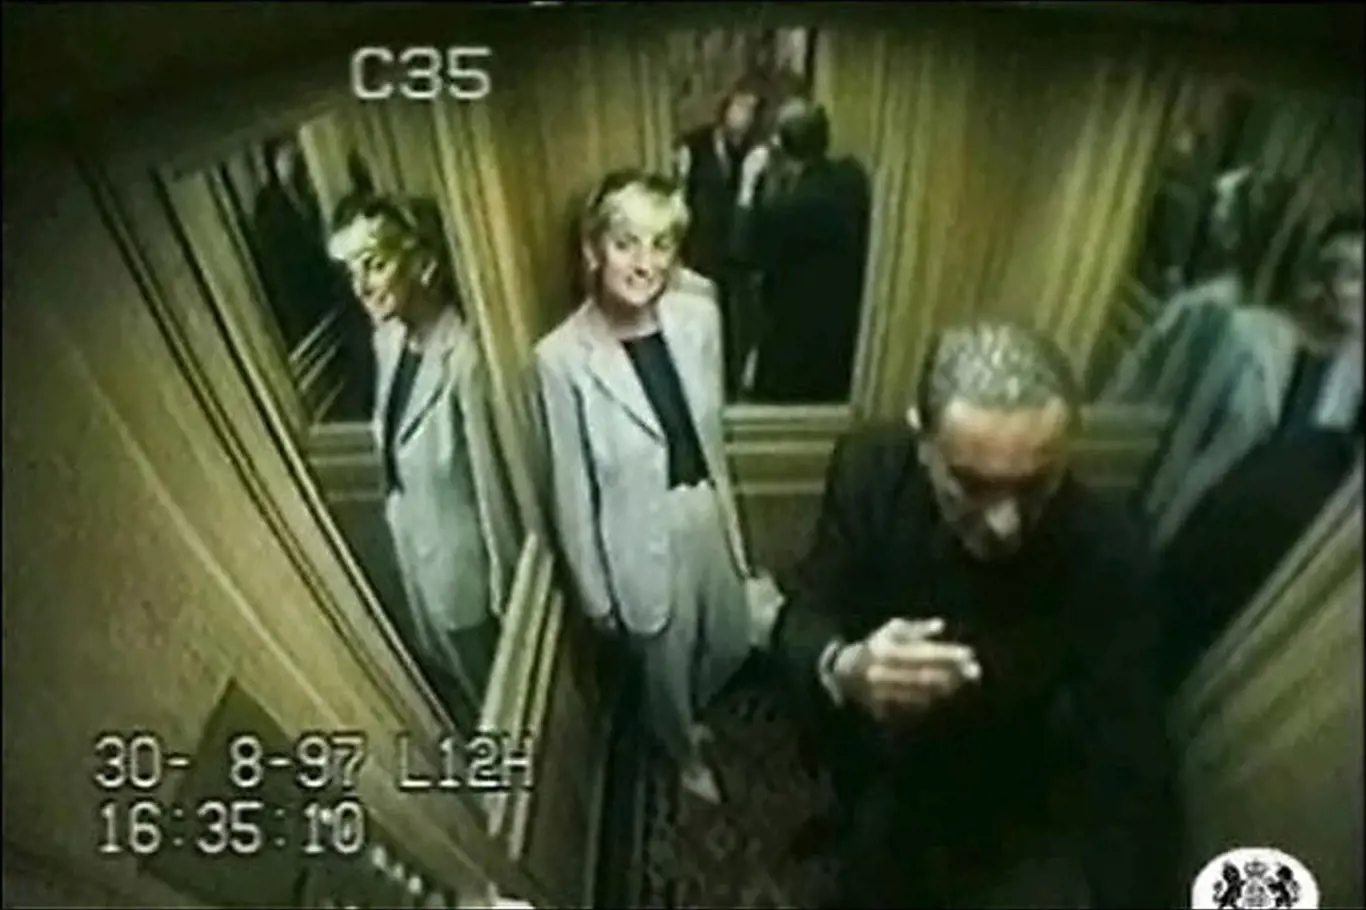 Videozáznam z výtahu hotelu Ritz. Princezna Diana společně s Fayedem a ochrankou